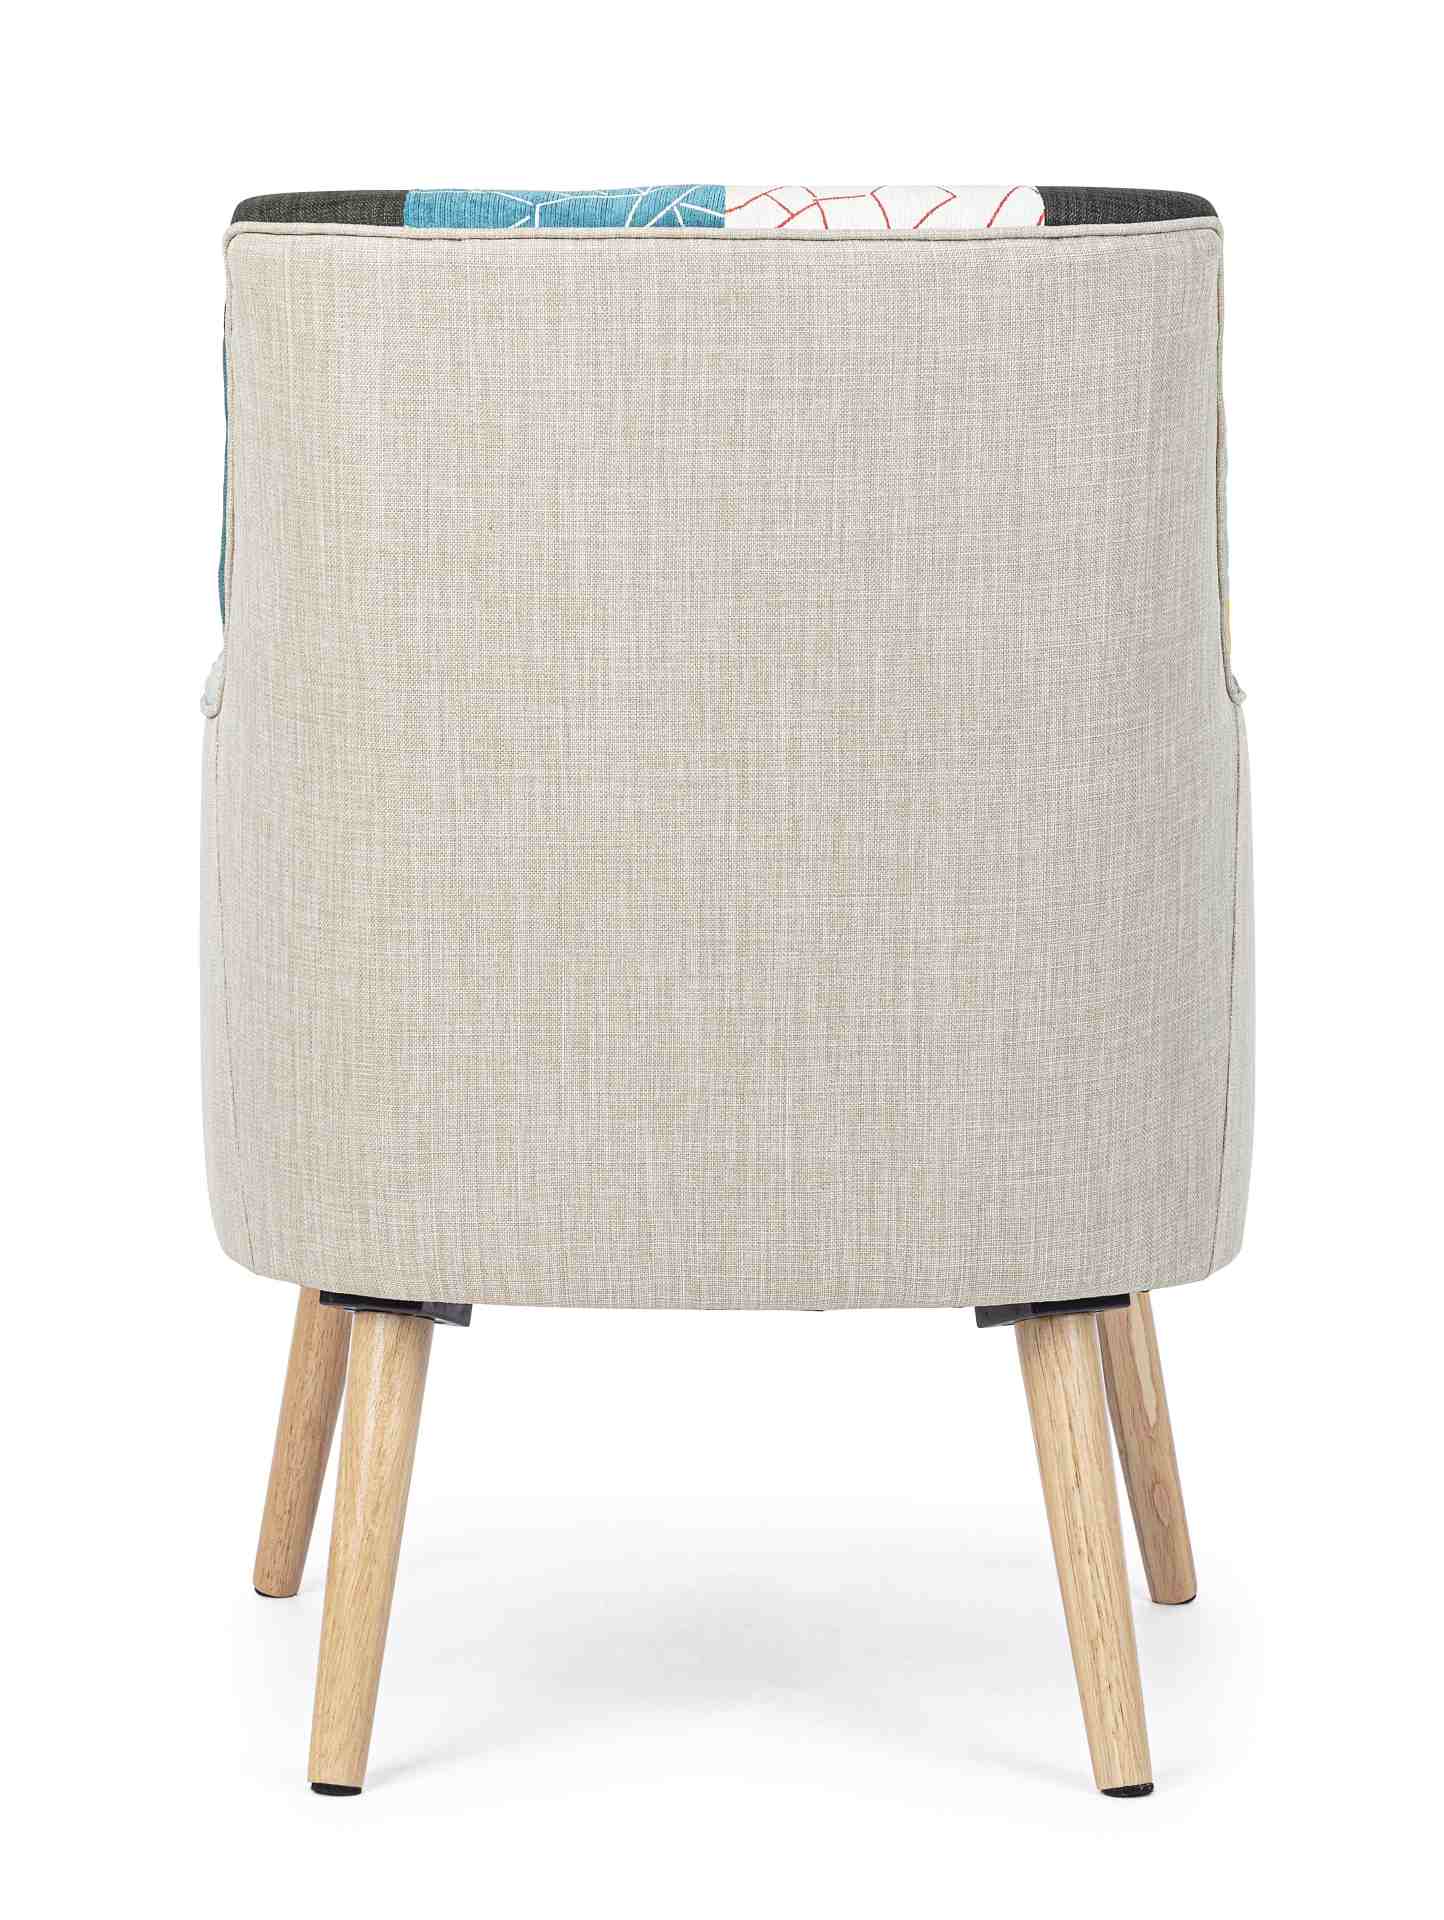 Der Sessel Galatea überzeugt mit seinem klassischen Design. Gefertigt wurde er aus Stoff, welcher einen mehrfarbigen Farbton besitzt. Das Gestell ist aus Kautschukholz und hat eine natürliche Farbe. Der Sessel besitzt eine Sitzhöhe von 43 cm. Die Breite b